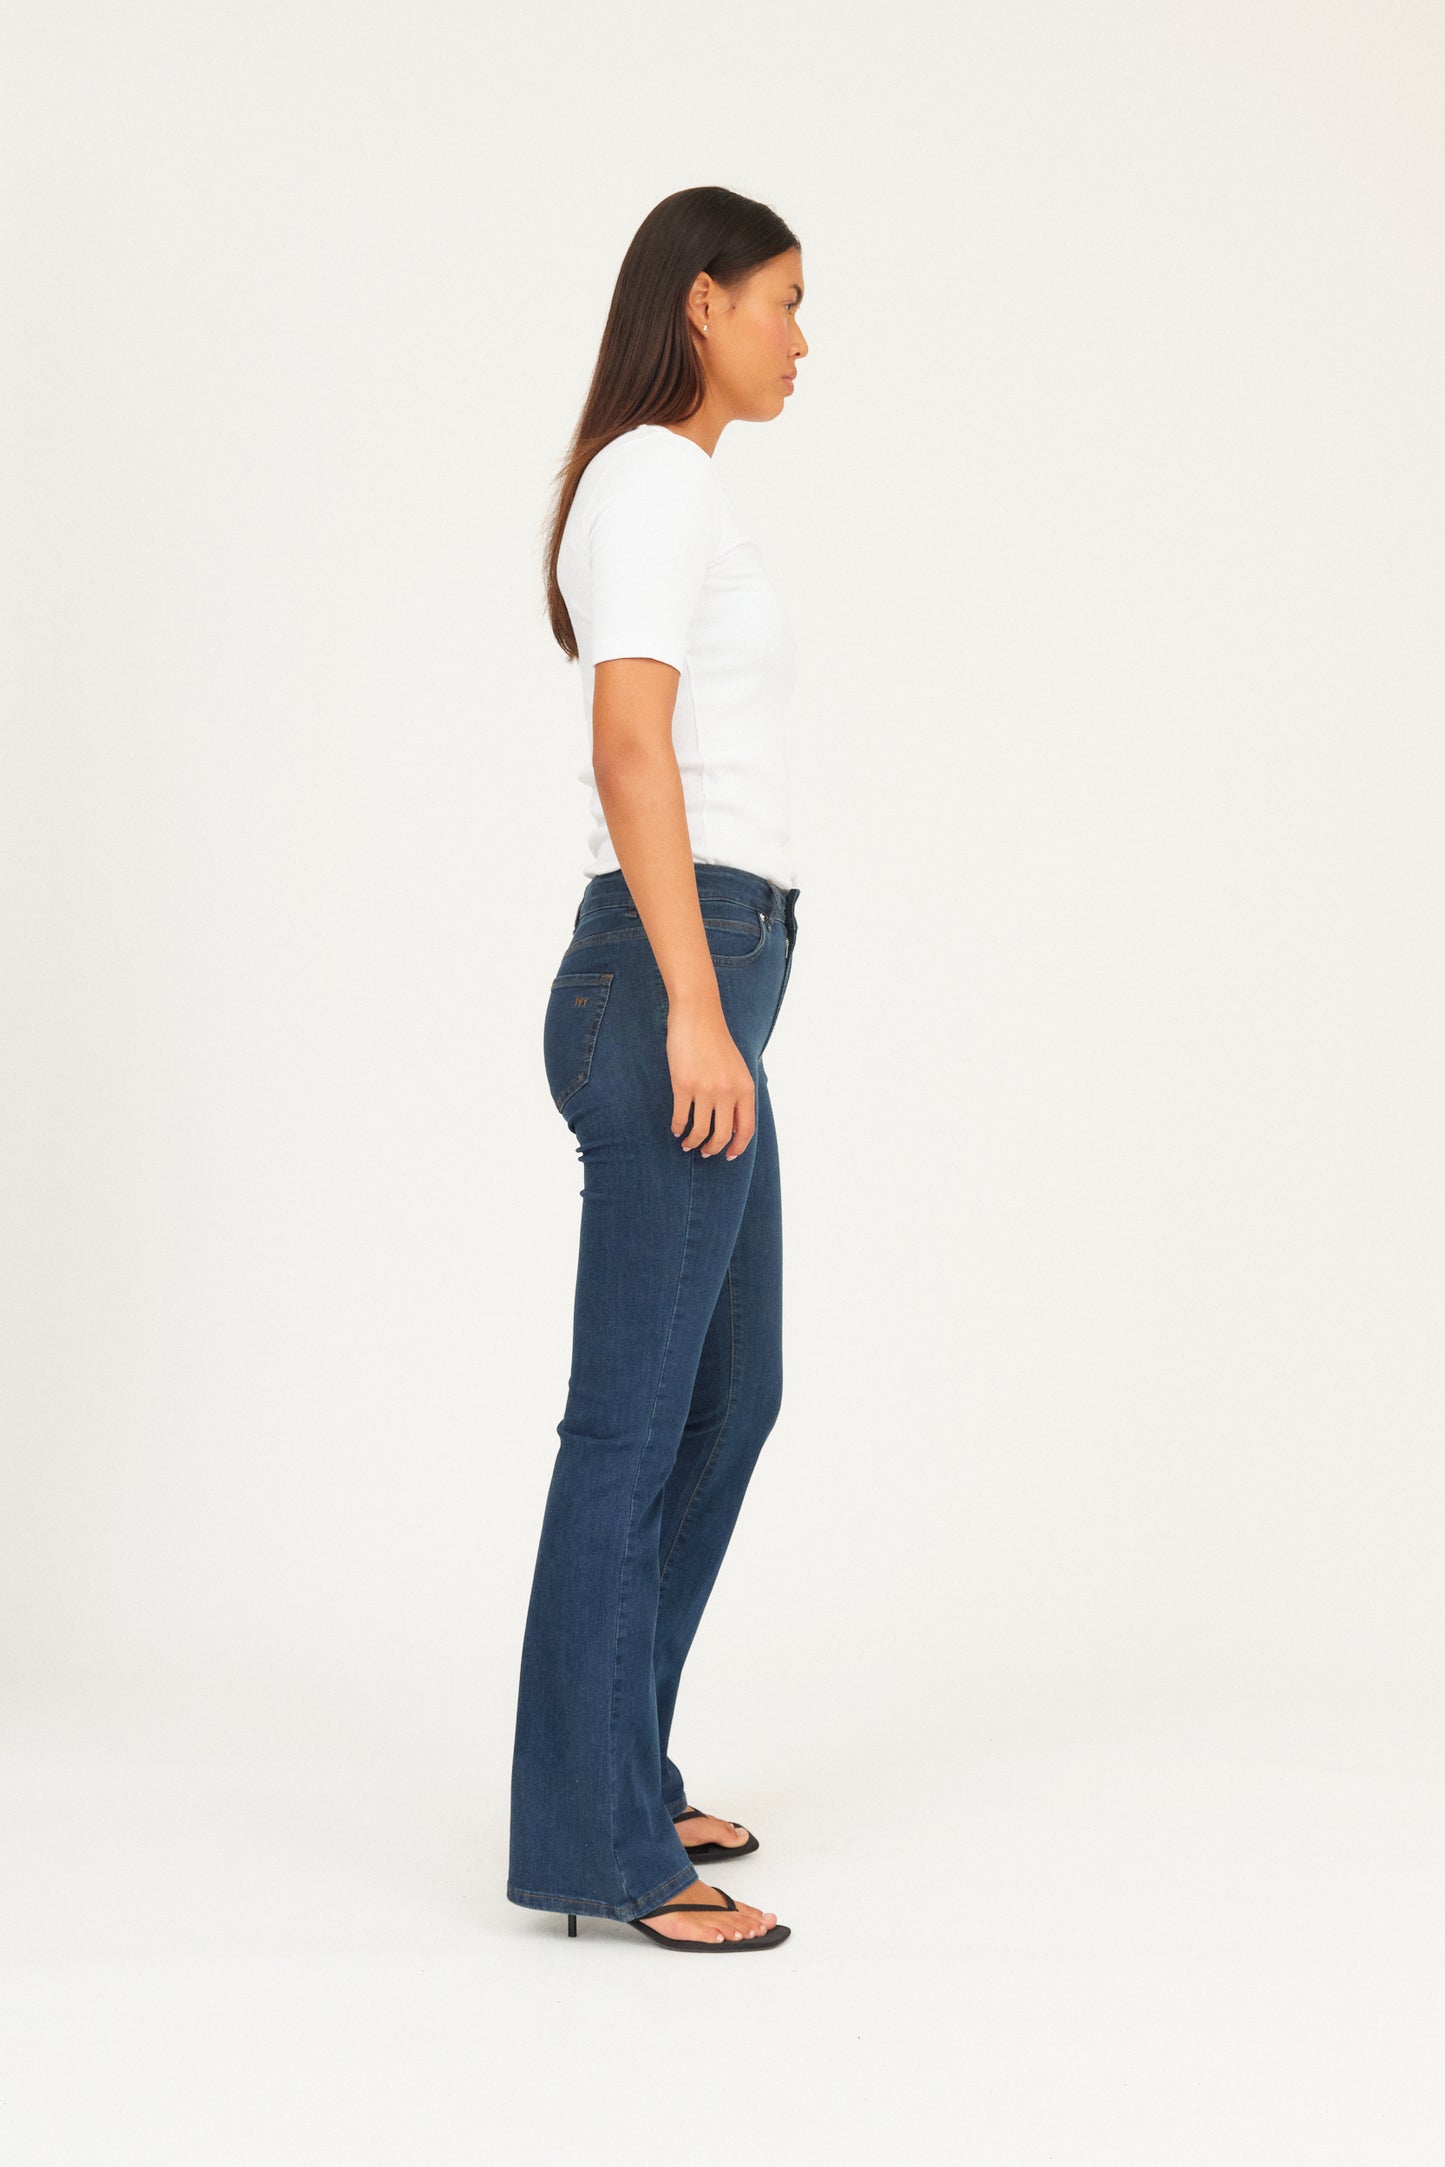 IVY Copenhagen IVY-Tara Jeans Wash Excl. Blue Jeans & Pants 51 Denim Blue